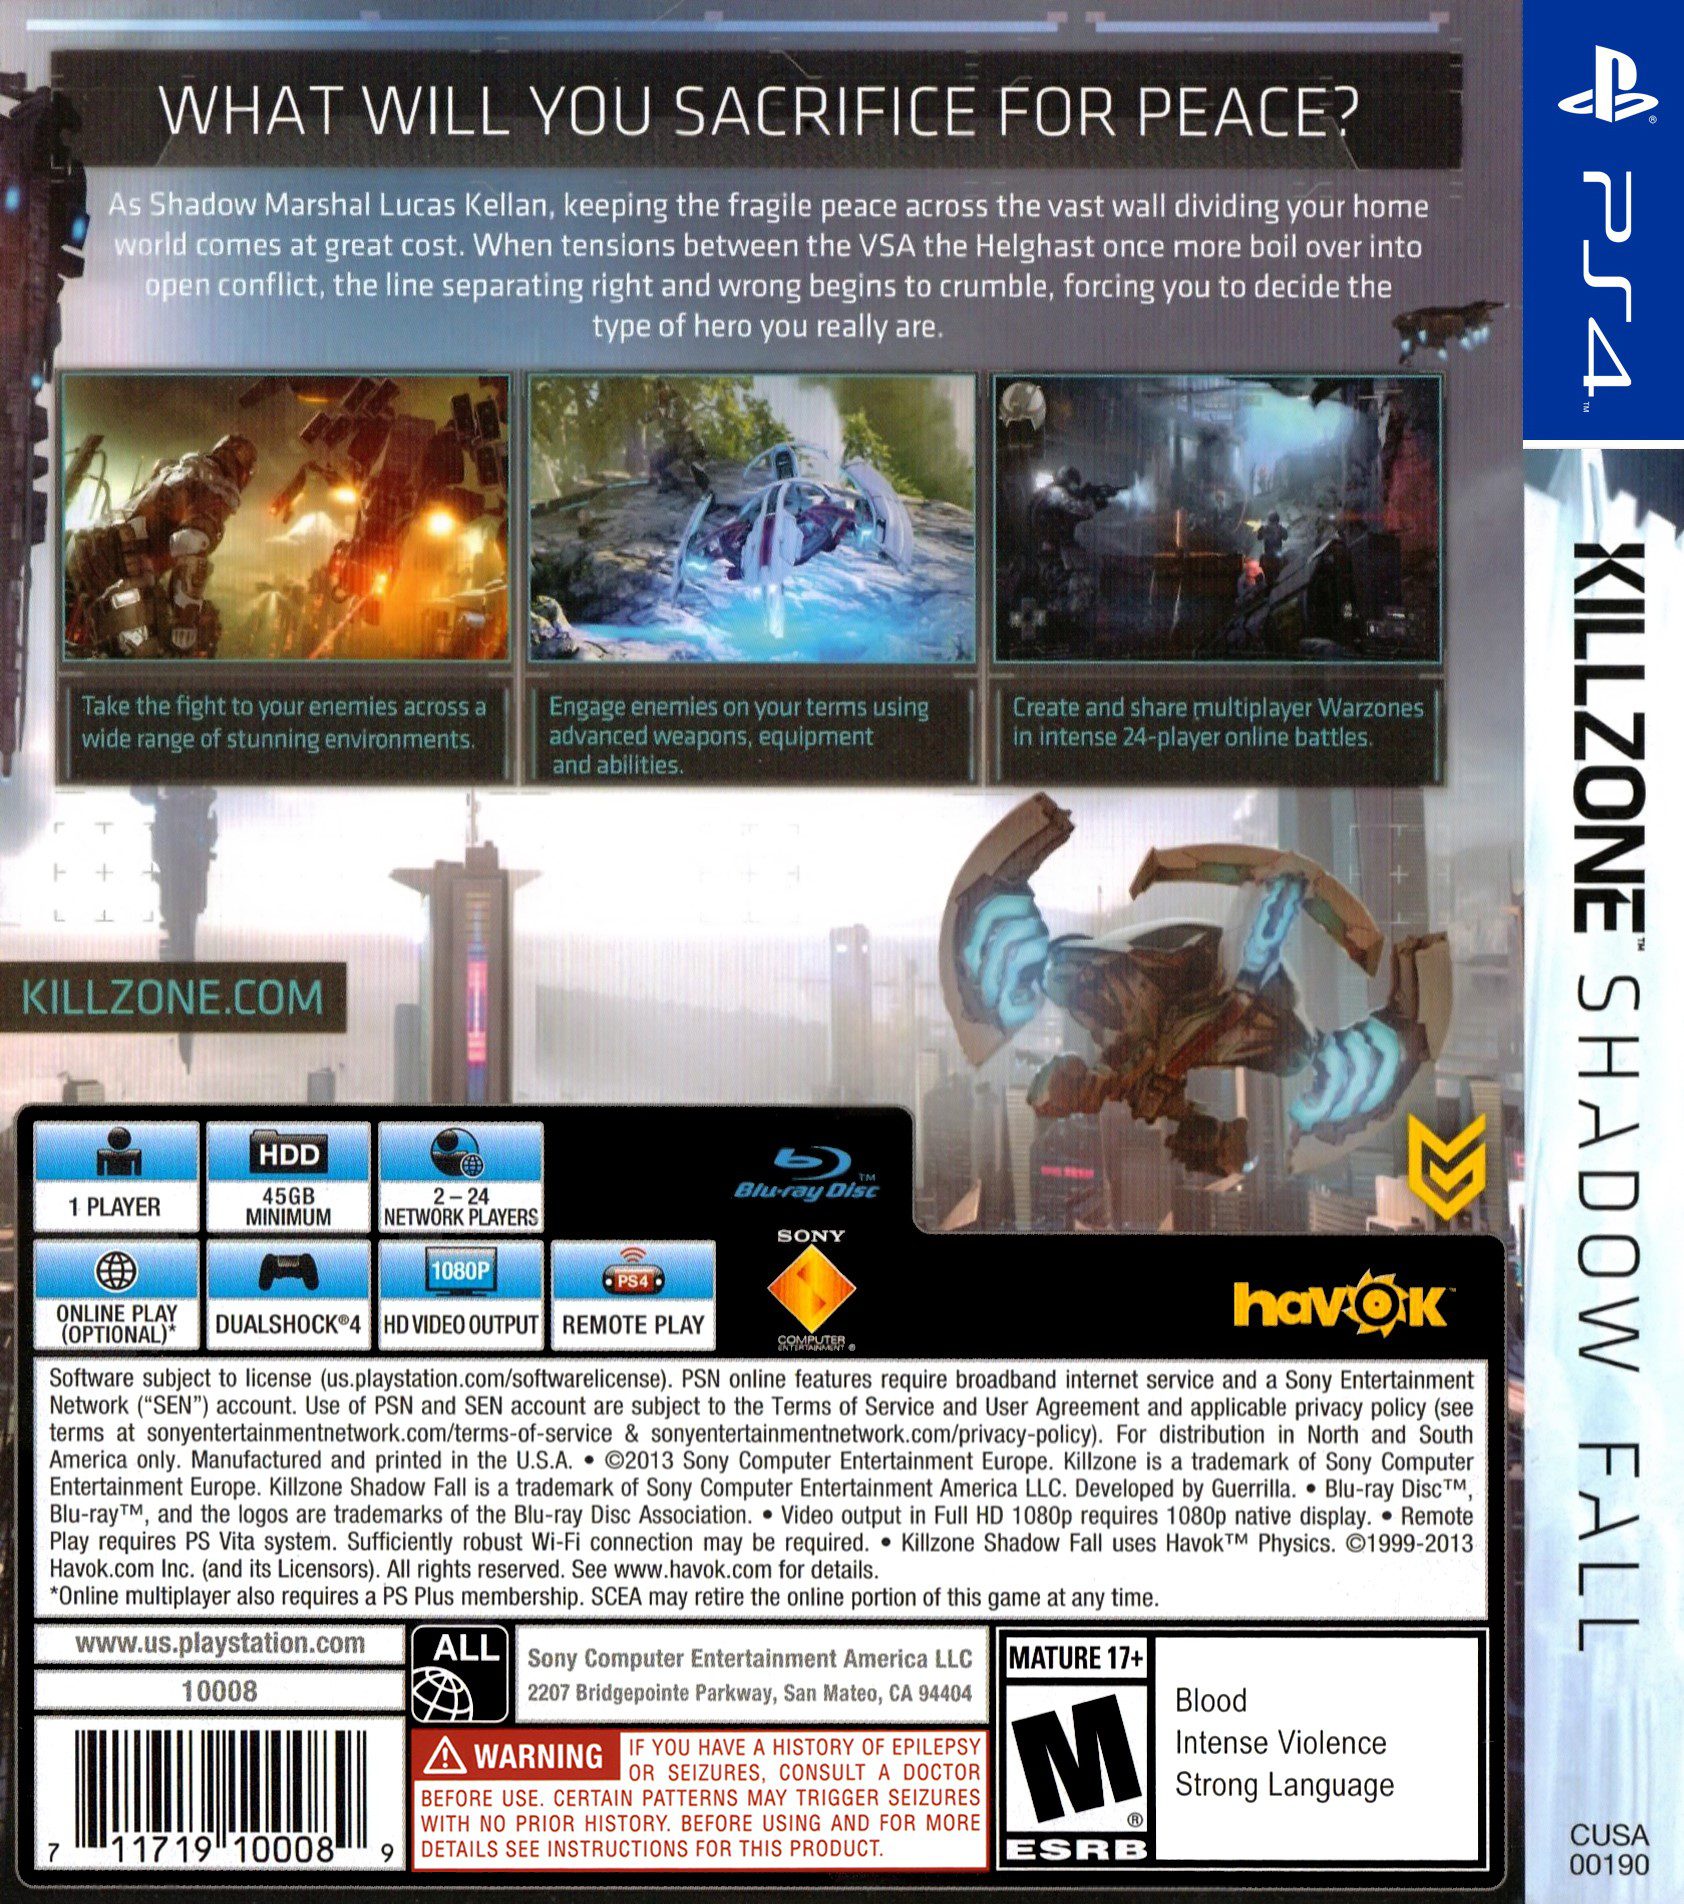 Killzone Shadow Fall PS4